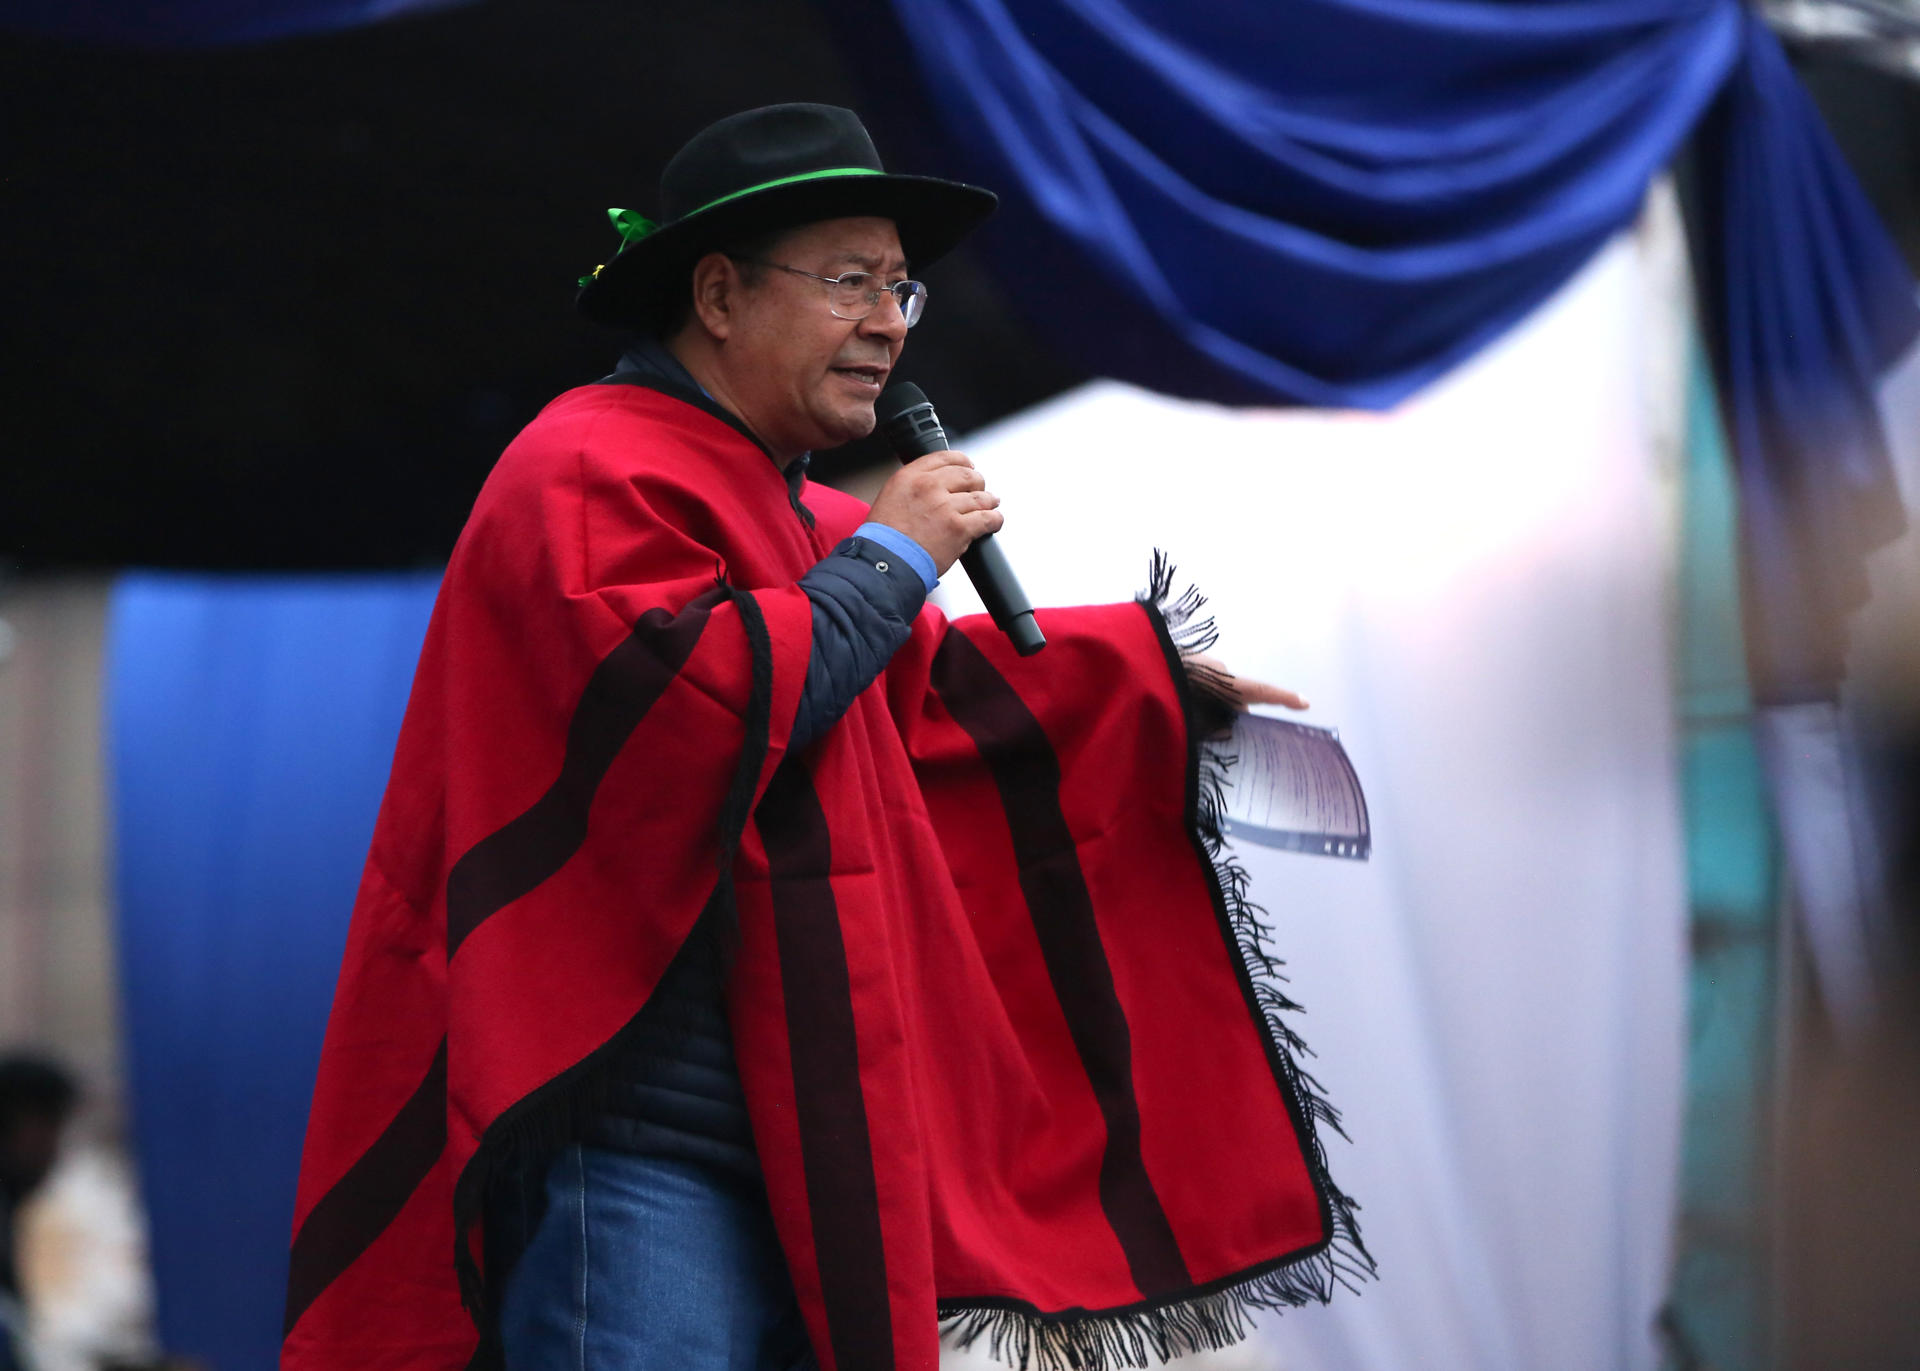 Foto de archivo del presidente de Bolivia, Luis Arce. EFE/ Luis Gandarillas